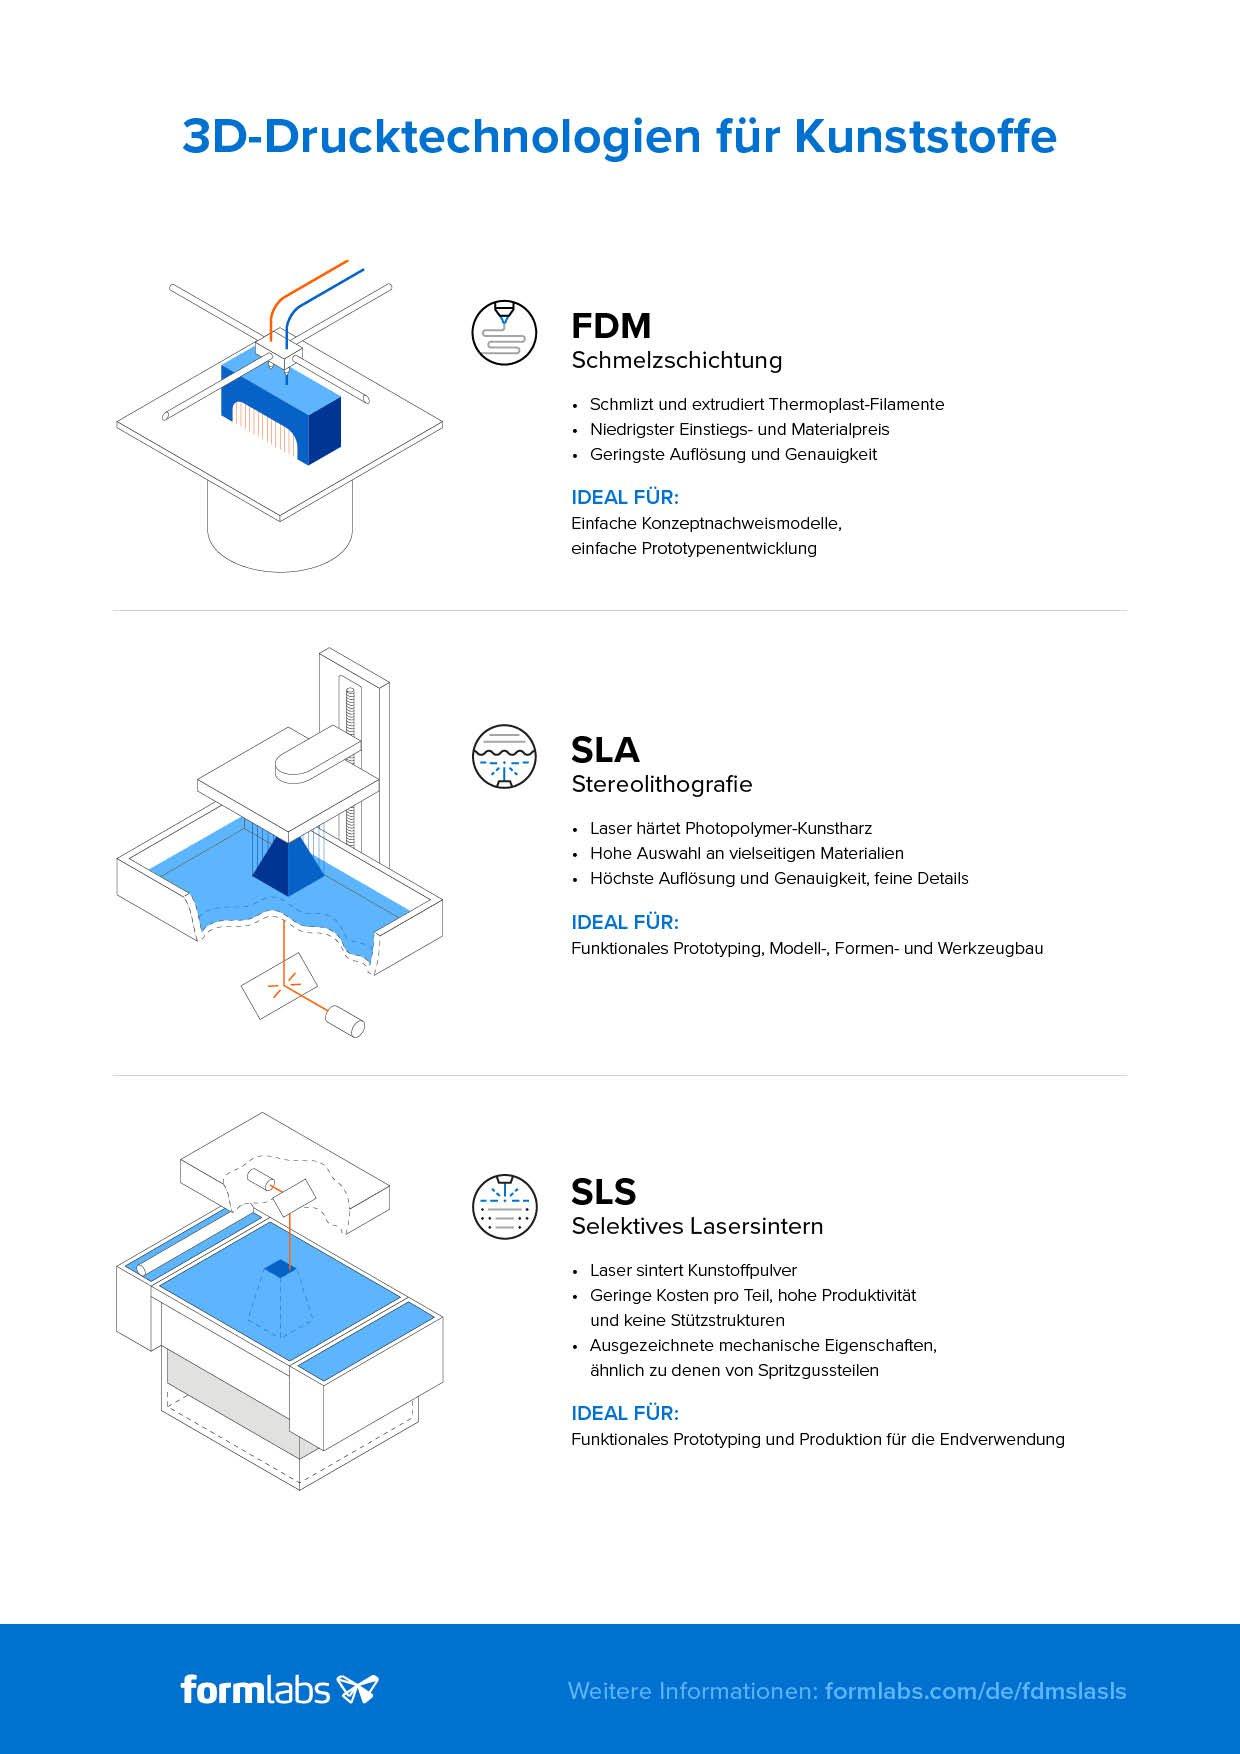 3D-Drucker-Technologien im Vergleich: FDM, SLA und SLS